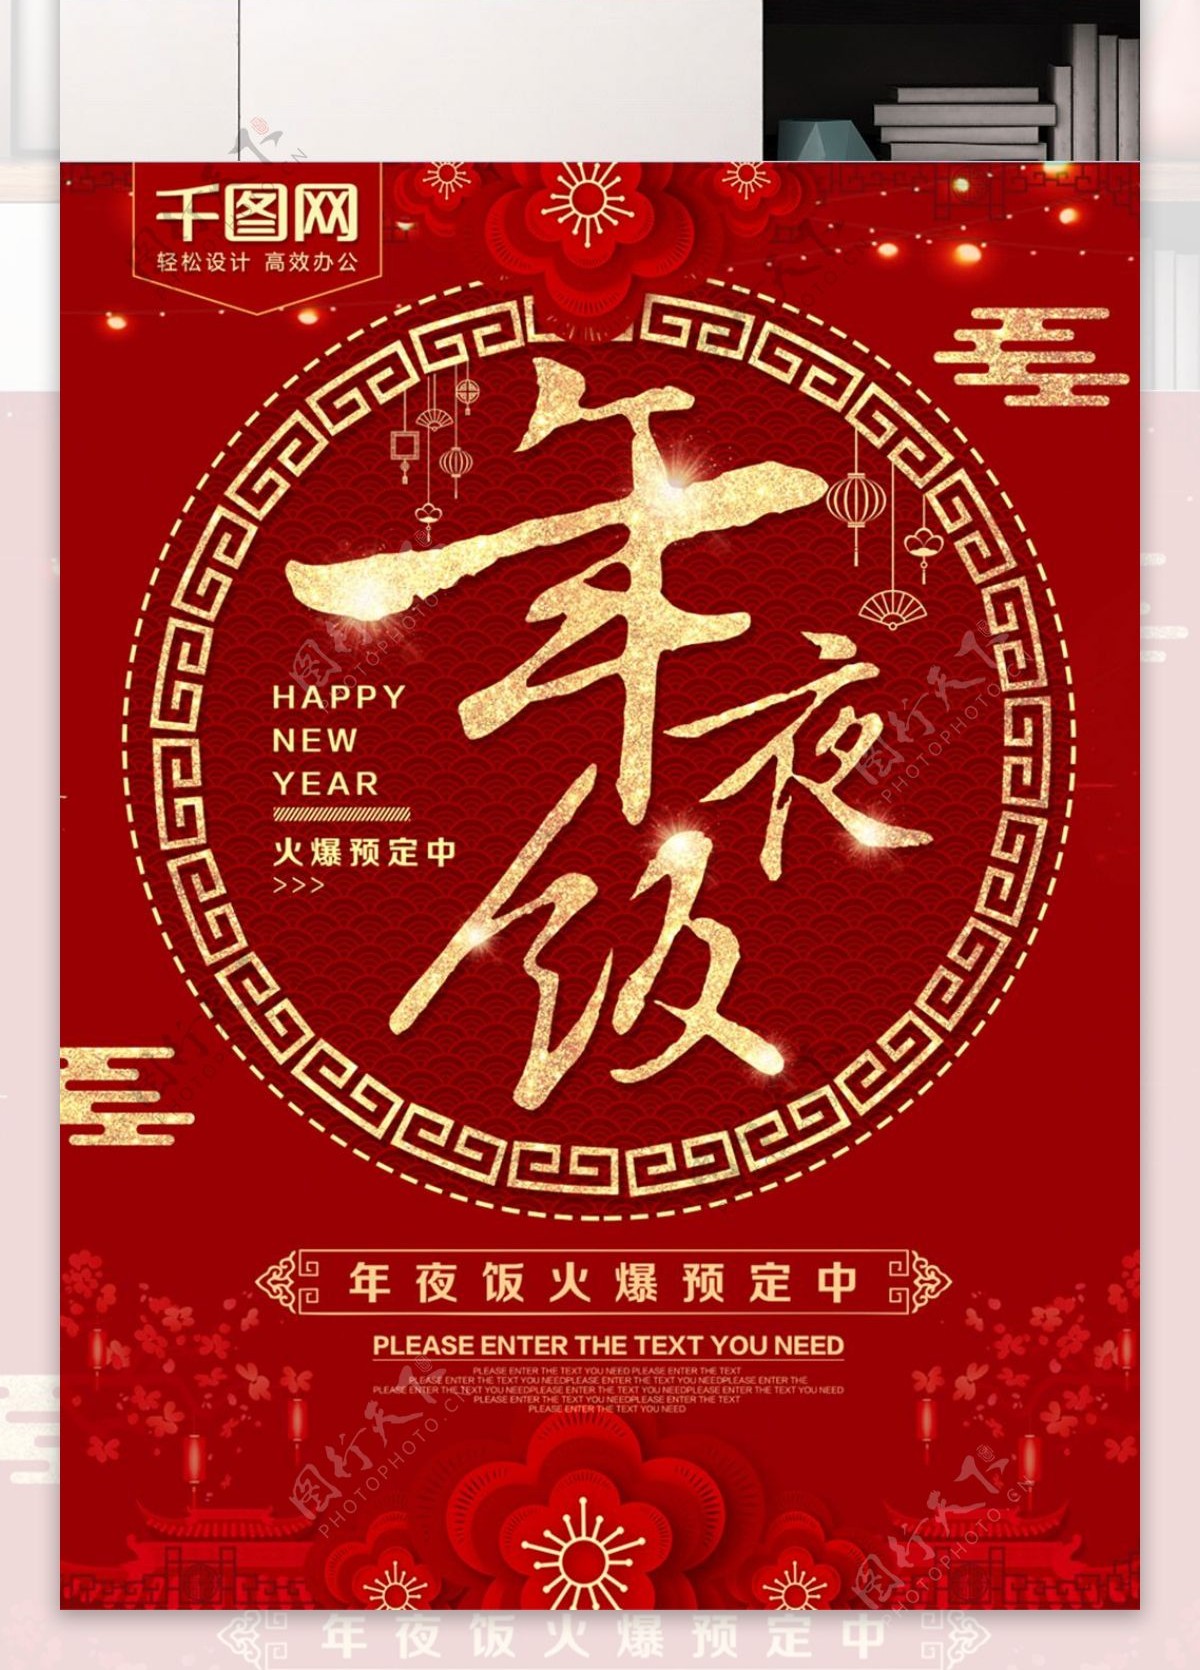 红金喜庆年夜饭预定促销海报